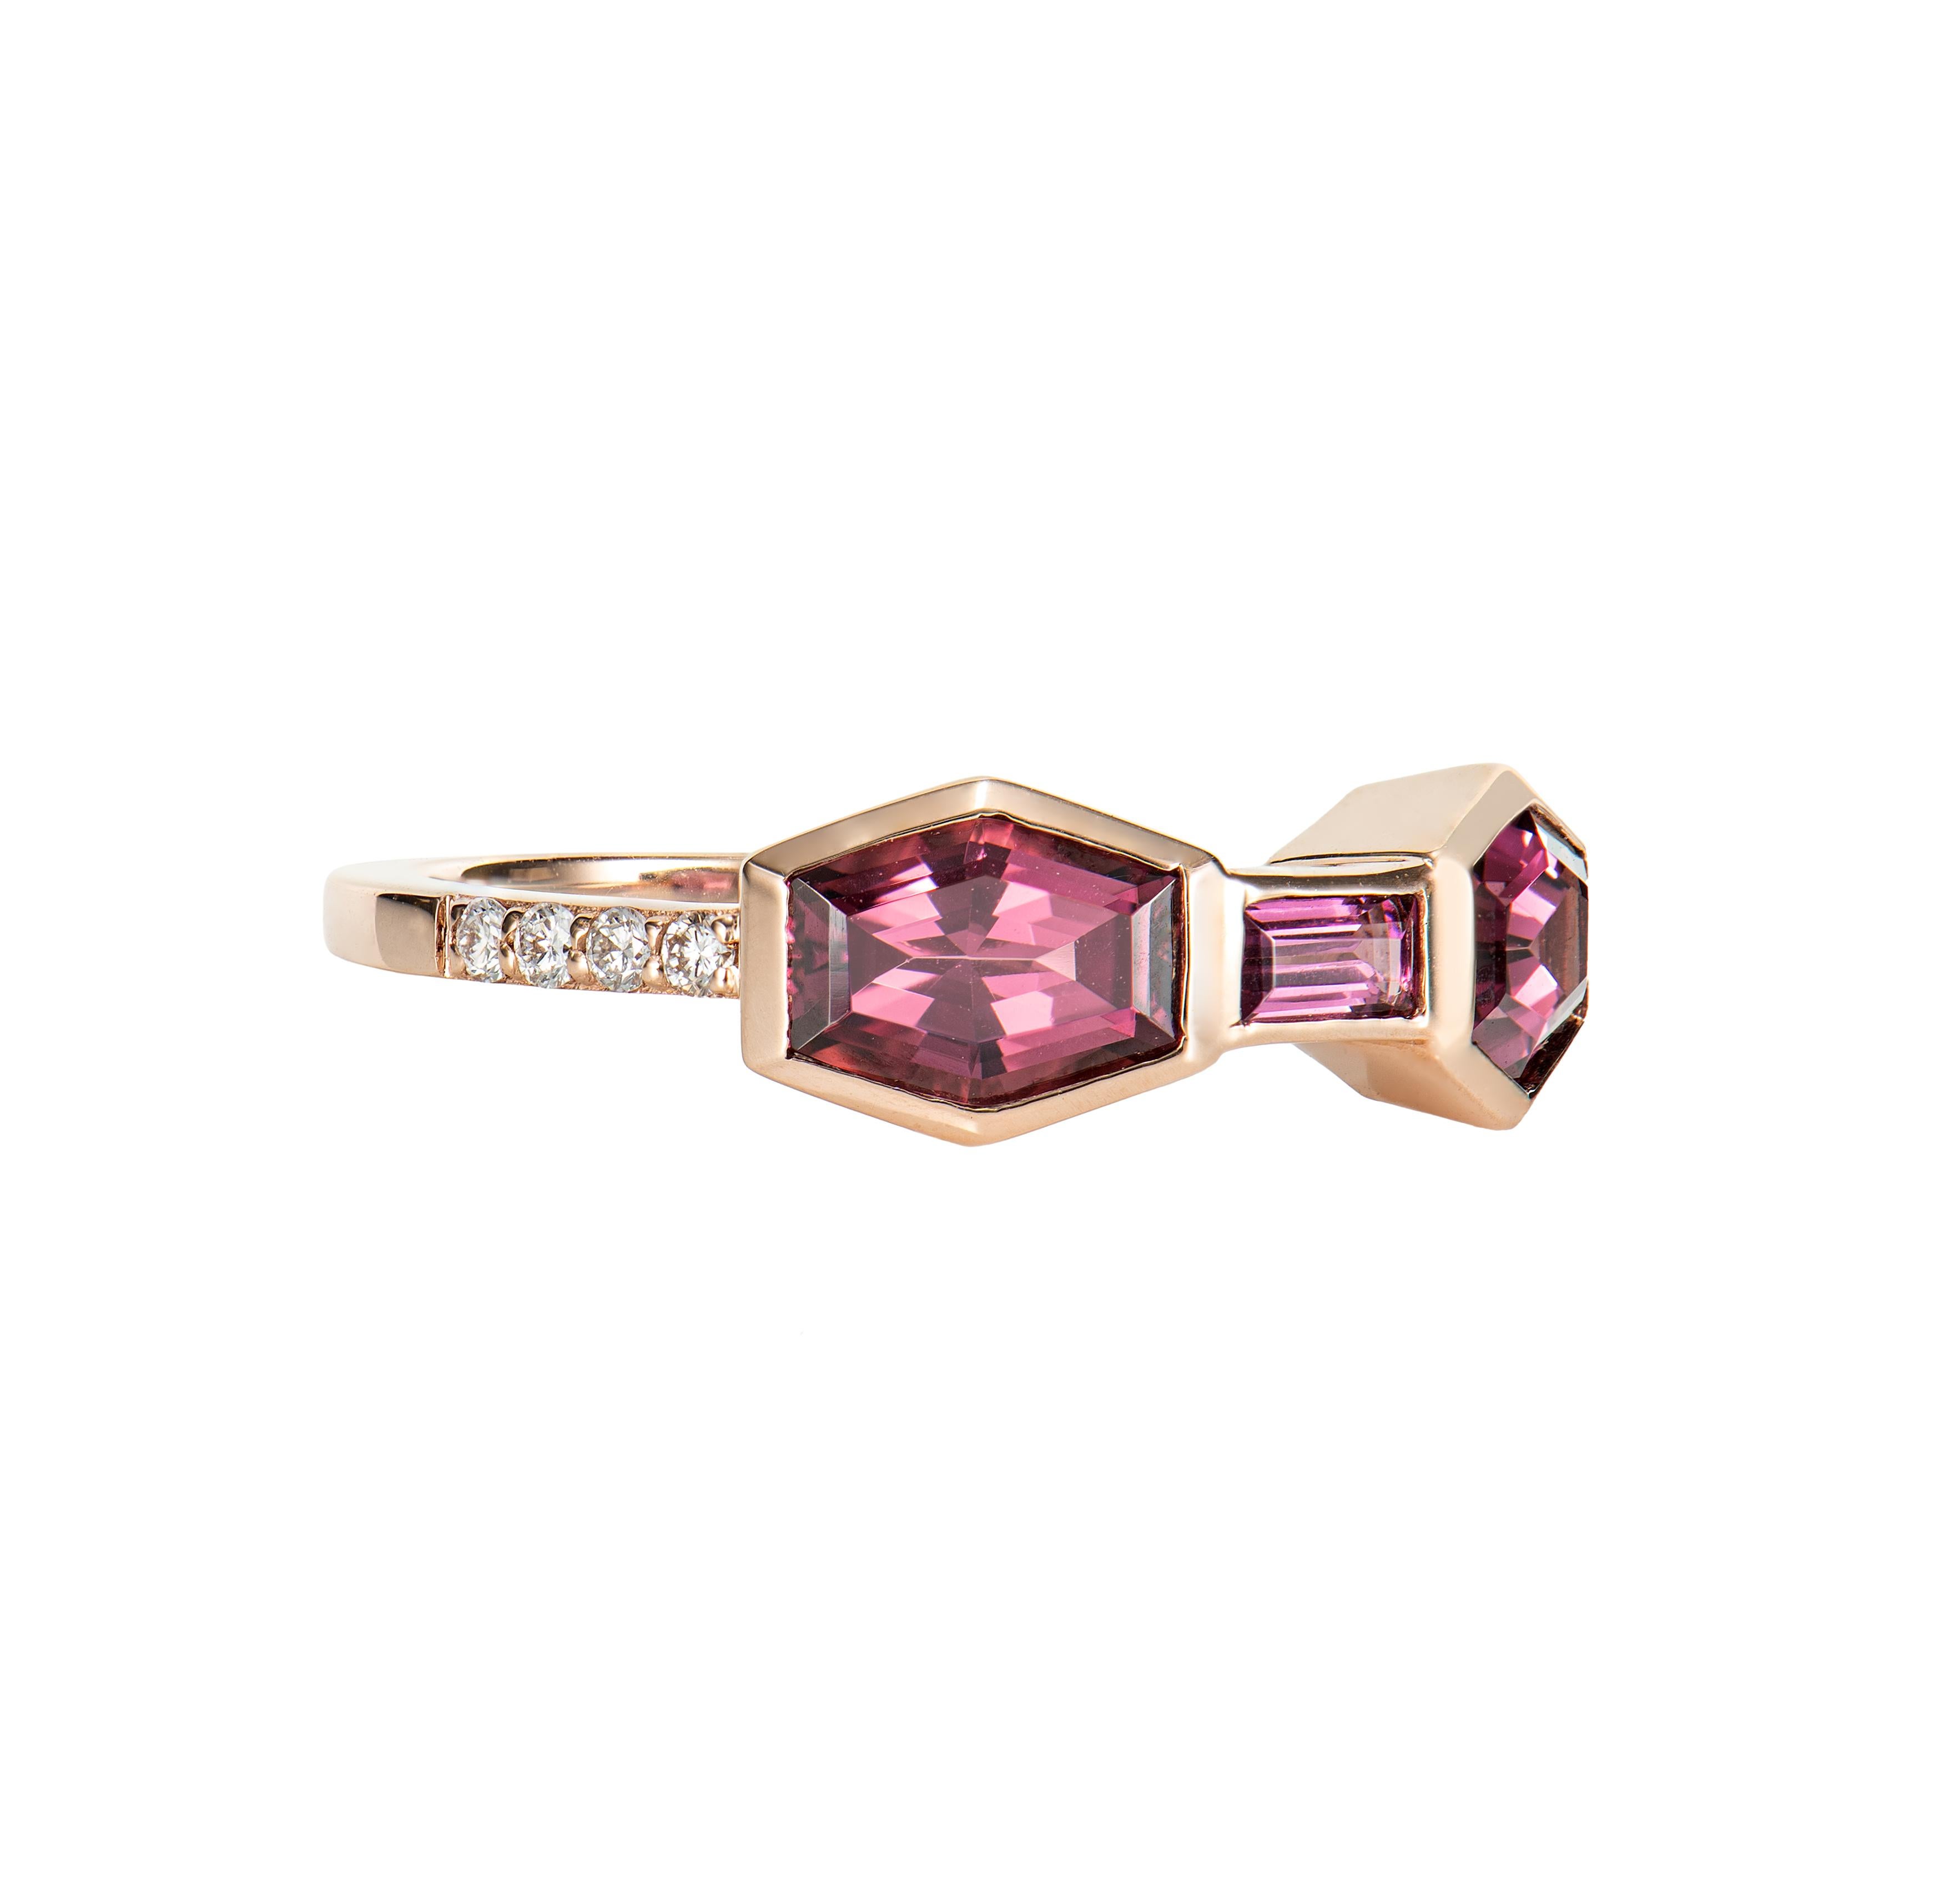 Es ist ein Fancy Rhodolith Ring in Sechseck Form mit Rot Rosa Purplish Farbton. Dieser Ring aus Roségold hat ein zeitloses, elegantes Aussehen und kann zu verschiedenen Anlässen getragen werden.

Rhodolith-Ring aus 14 Karat Roségold mit weißem